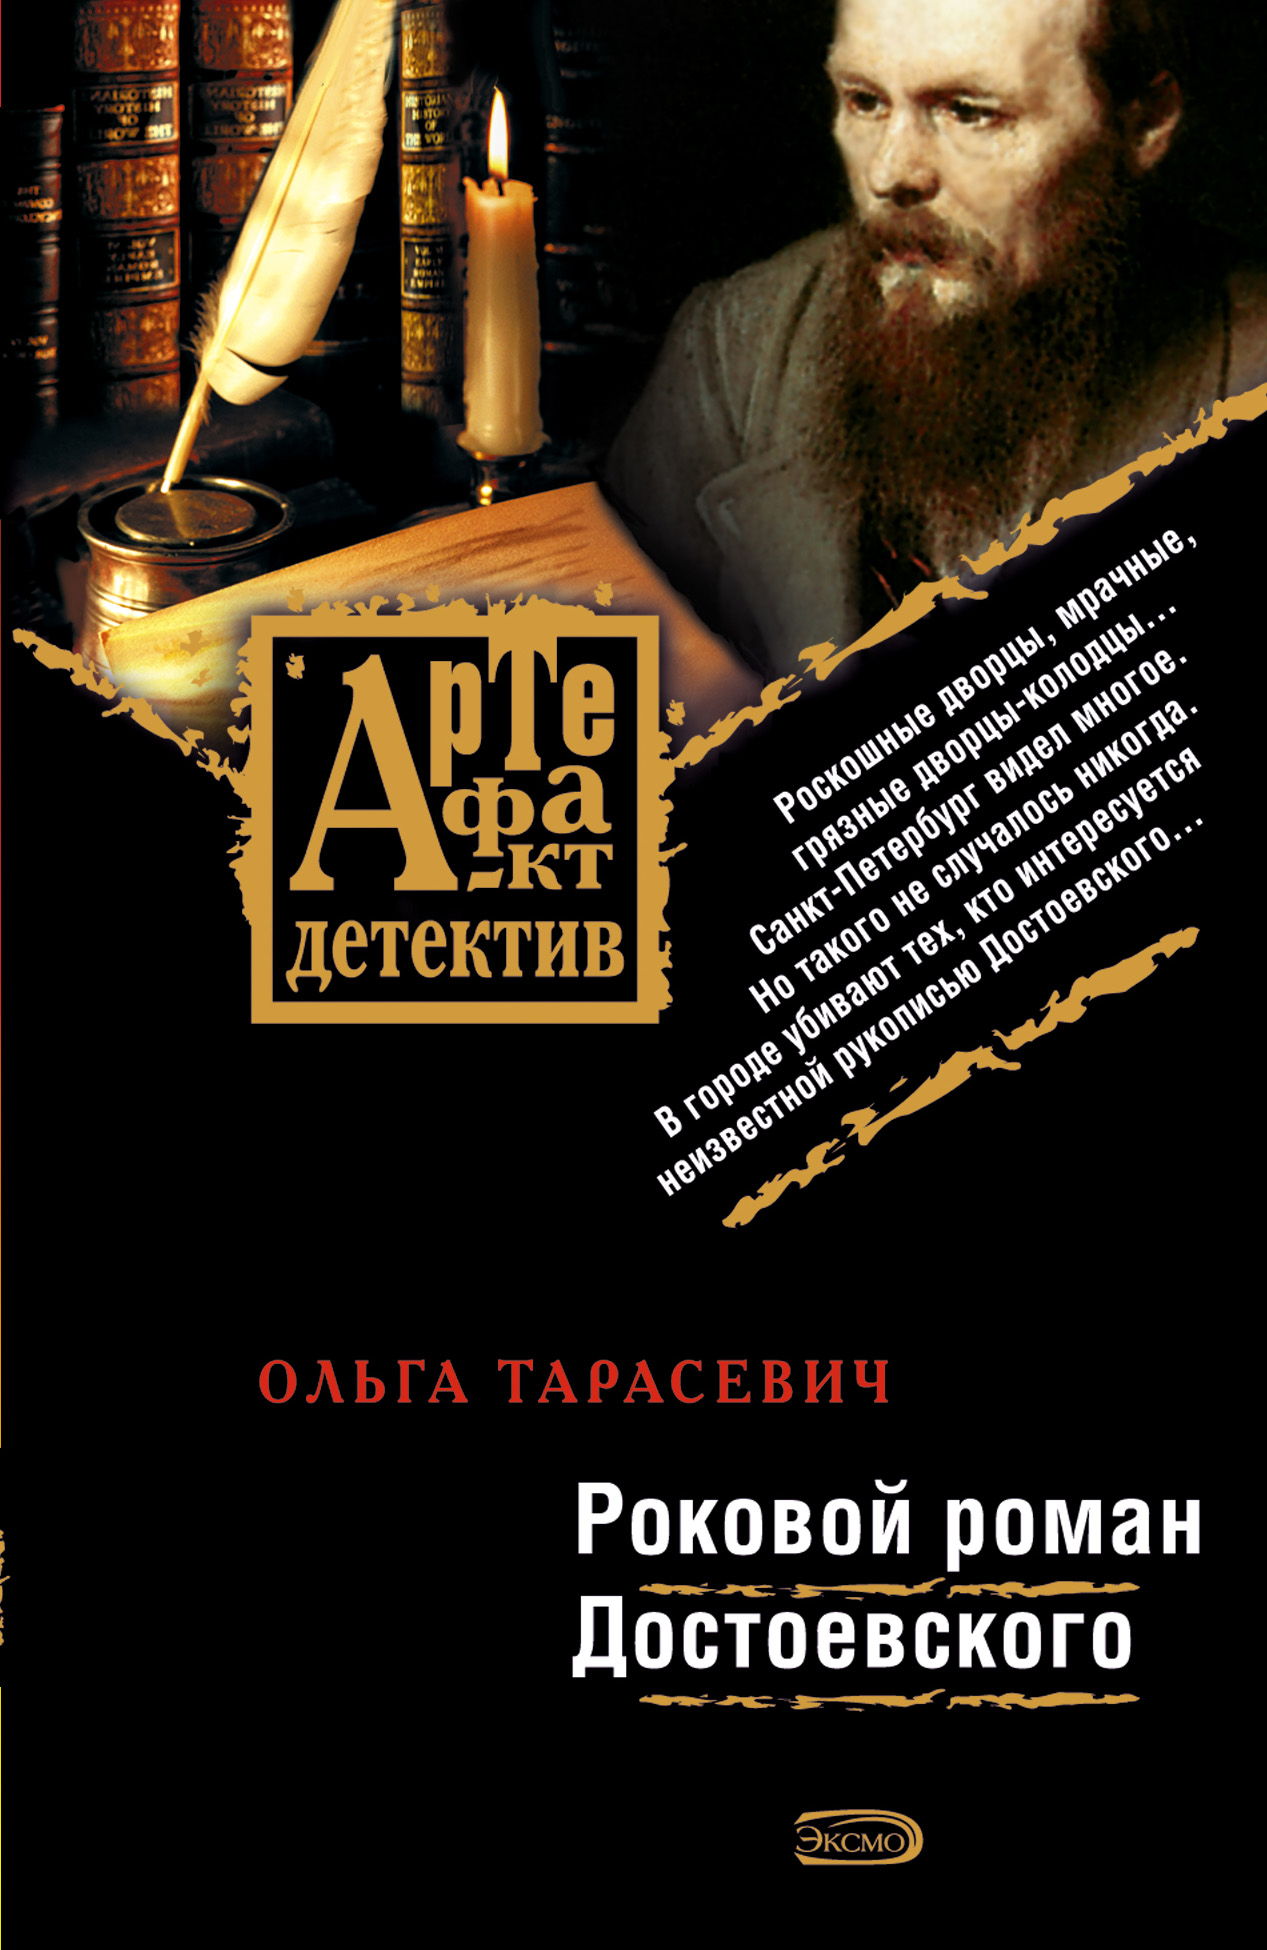 Роковой роман Достоевского читать онлайн